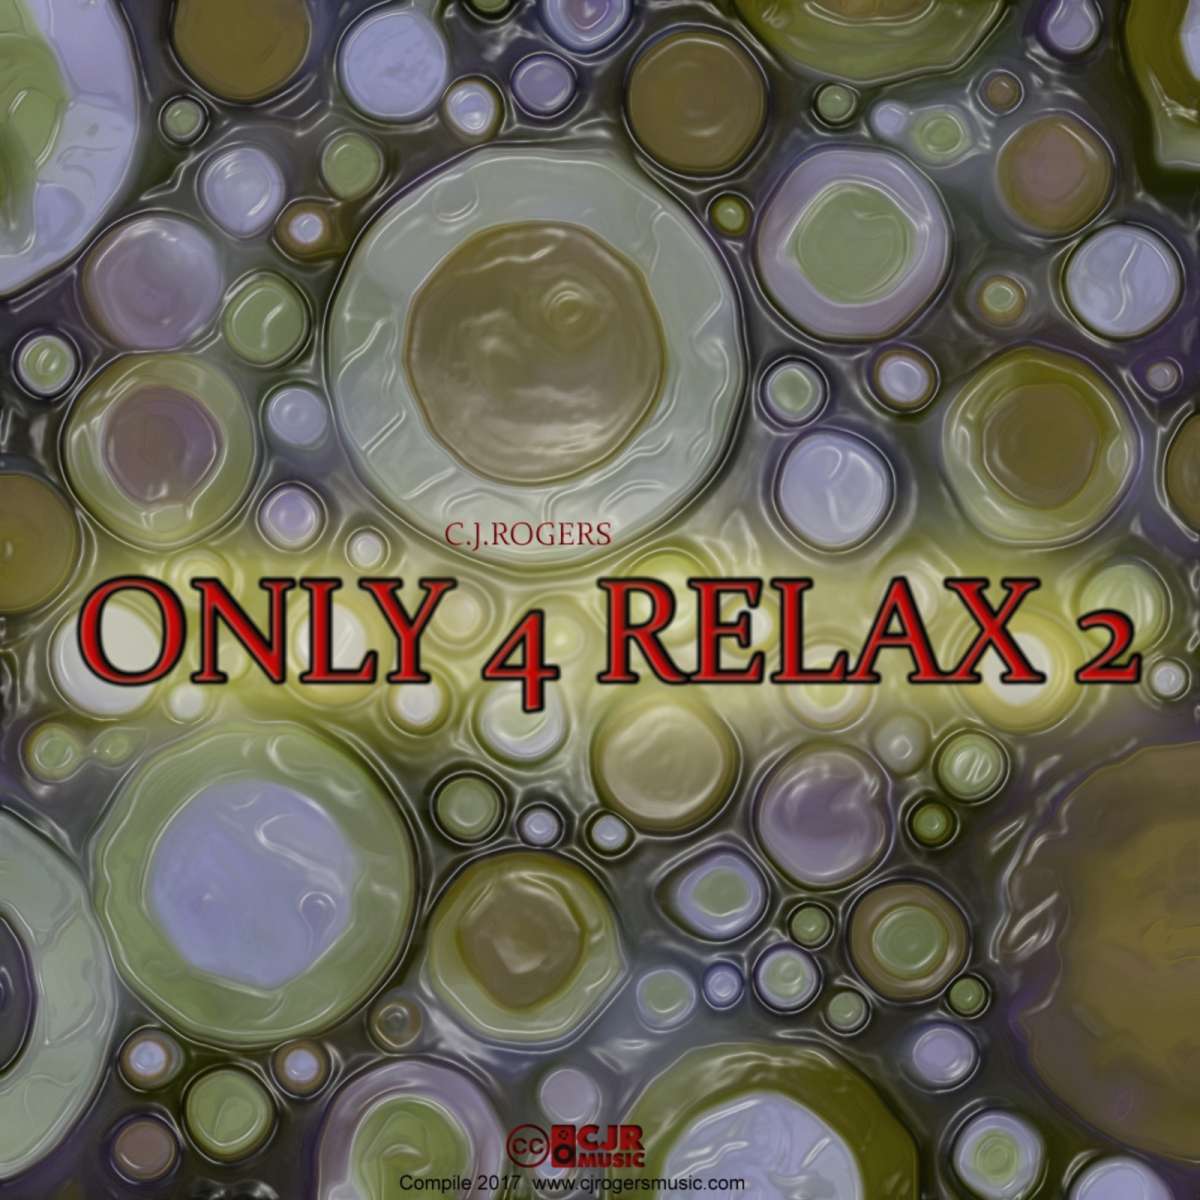 Only 4 Relax 2 - Fullsize Cover Art